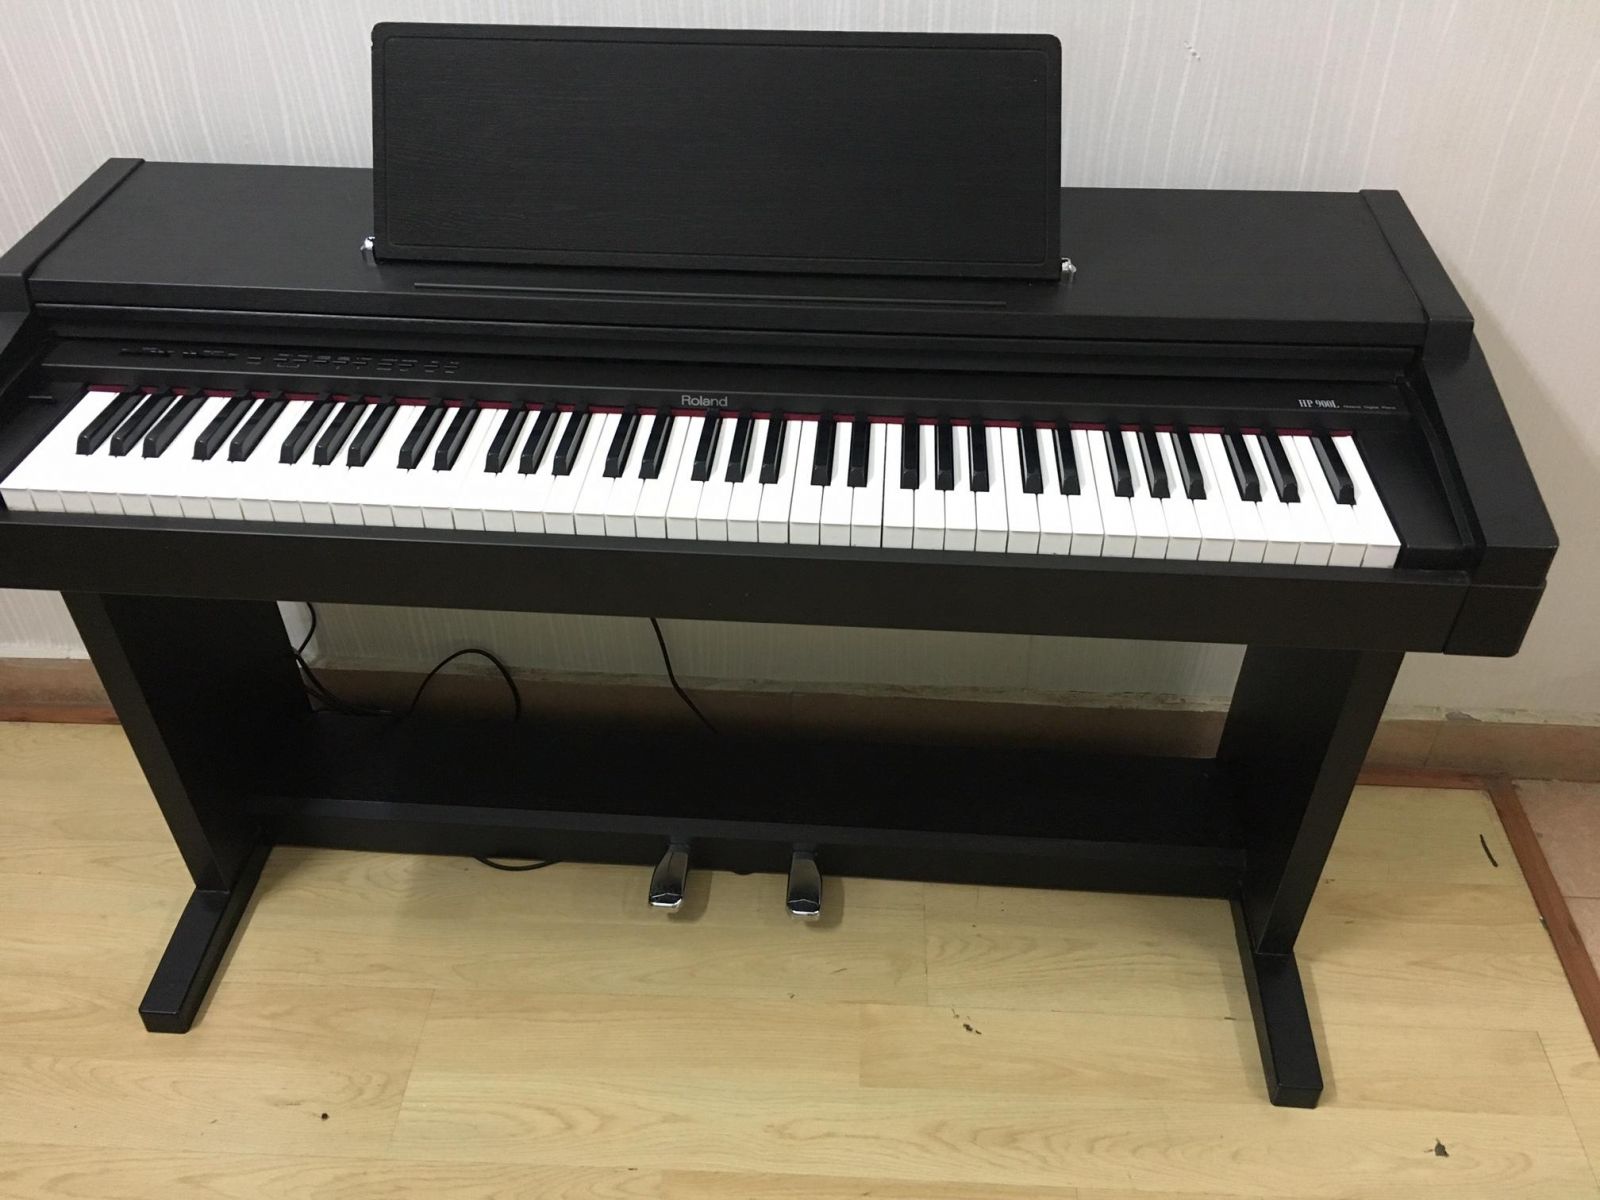 Đàn Piano Điện Roland HP-335